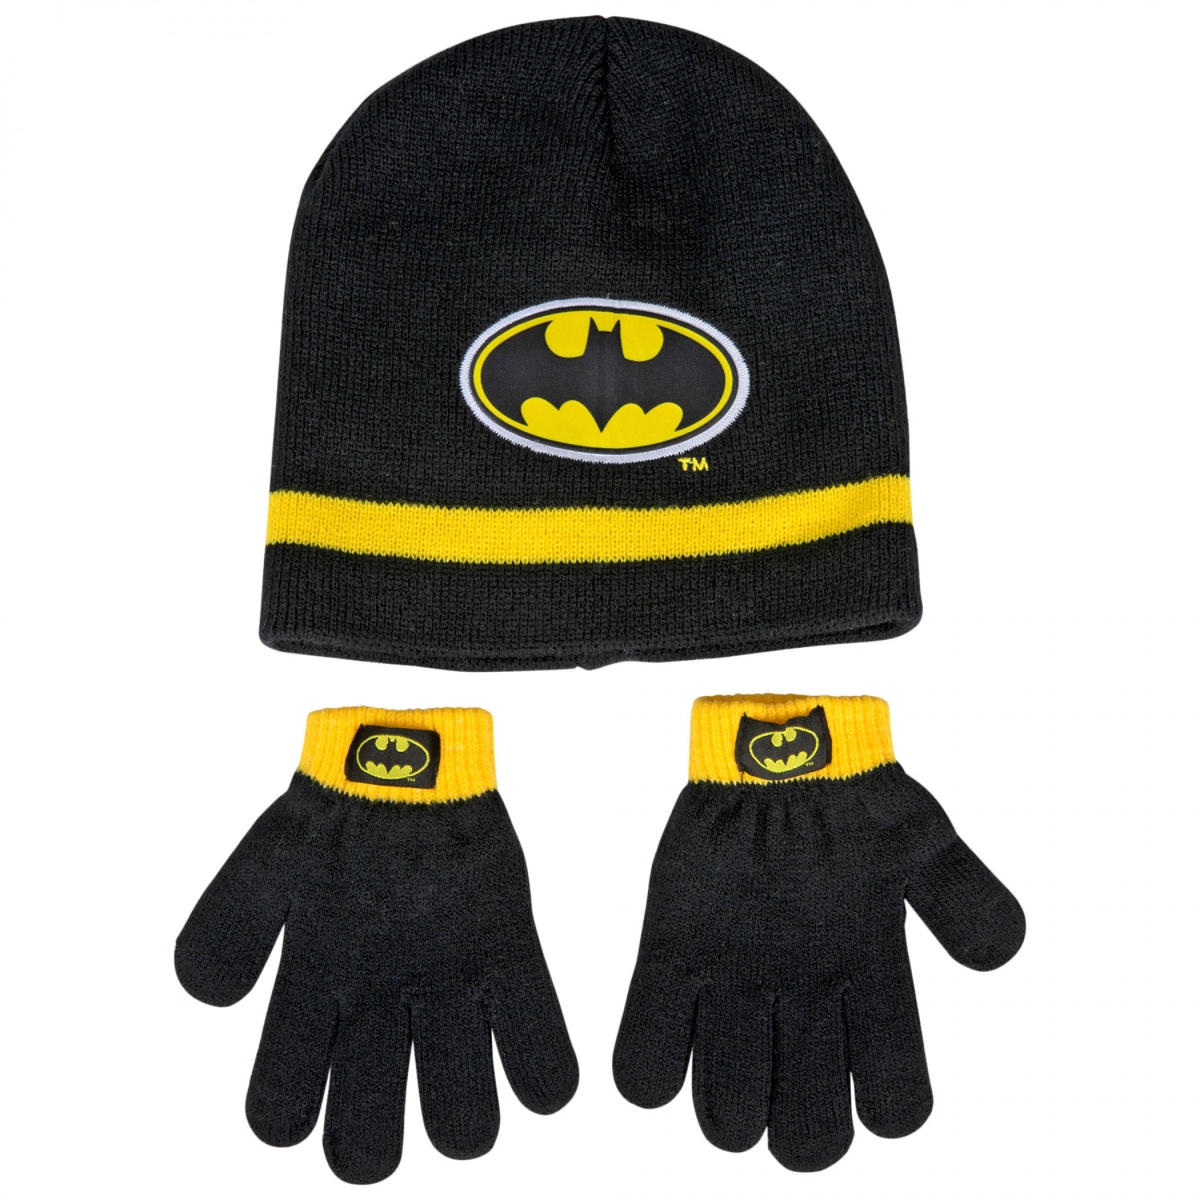 Picture of Batman 846715 DC Comics Batman Bat Symbol Hat & Mitten Set